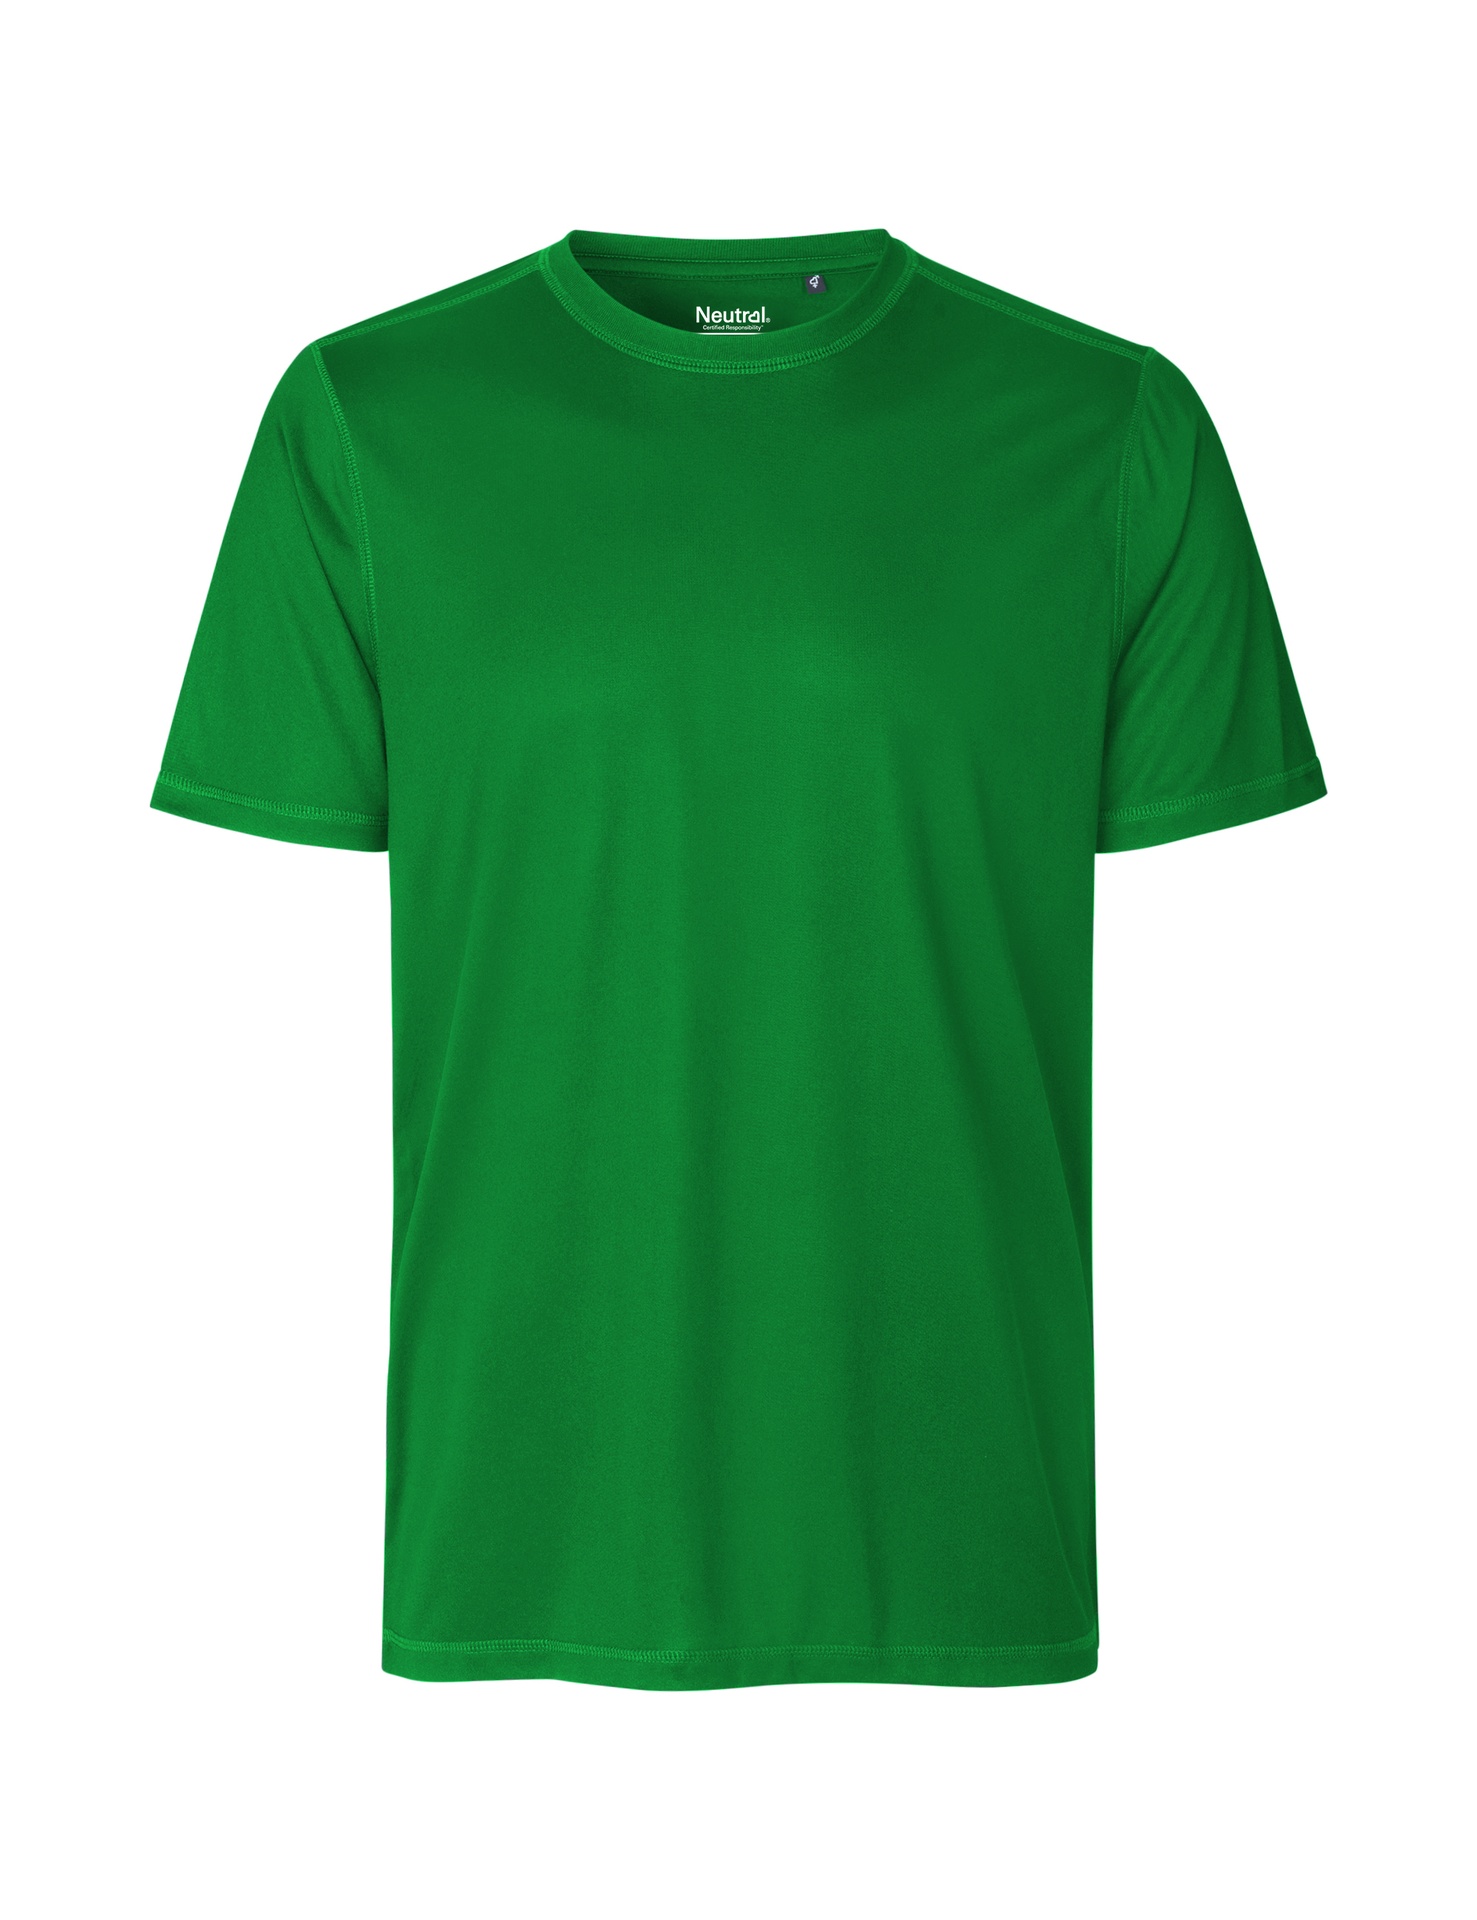 [PR/03812] Recycled Performance T-Shirt (Green 67, 2XL)